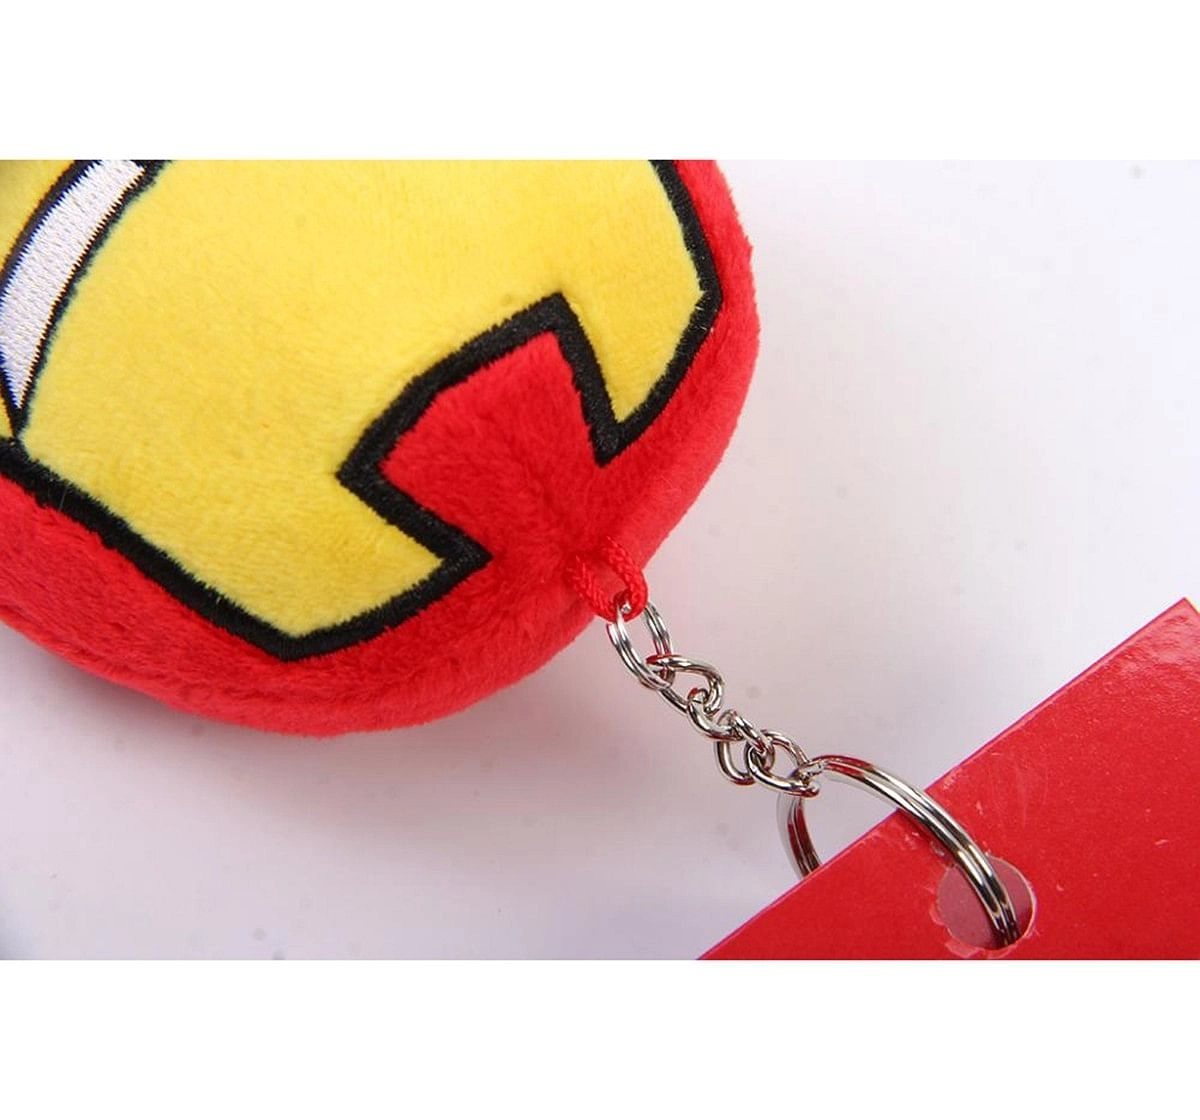 Marvel Ironman Plush Round Keychain , Red, 12Y+